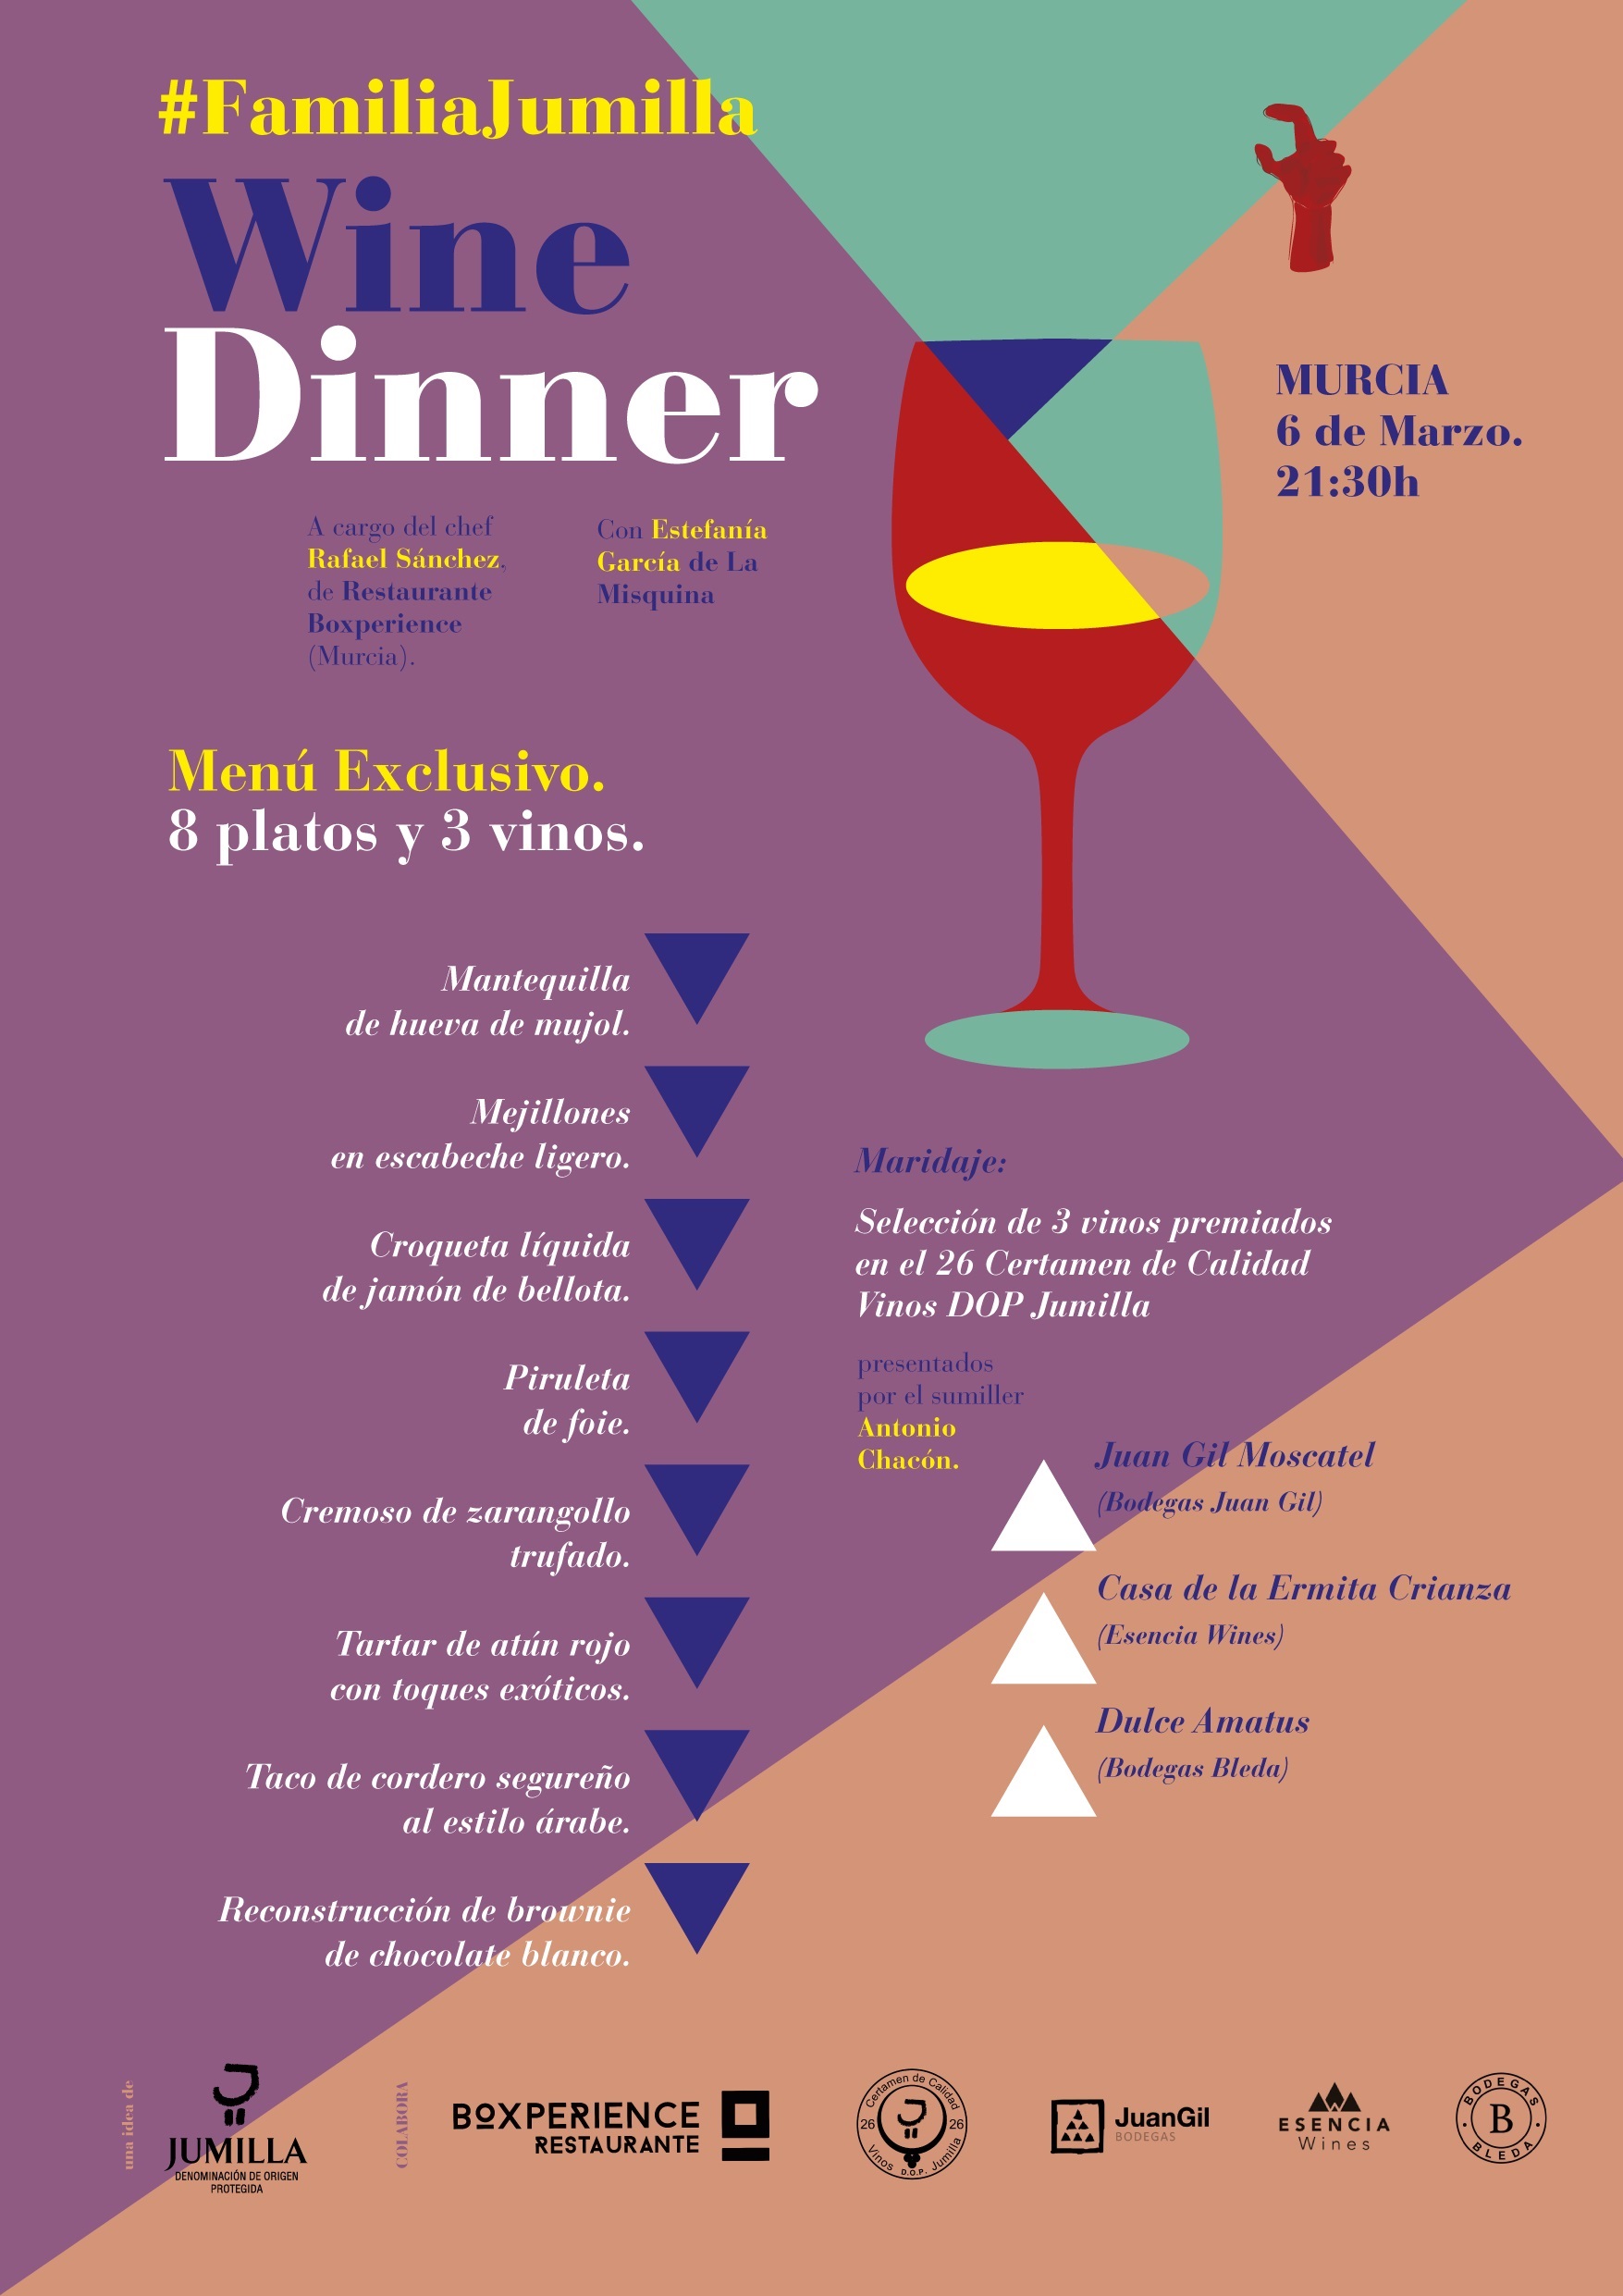 La DOP Jumilla lanza las 'Familia Jumilla Wine Dinners', cenas experienciales con chefs y sumiller invitados